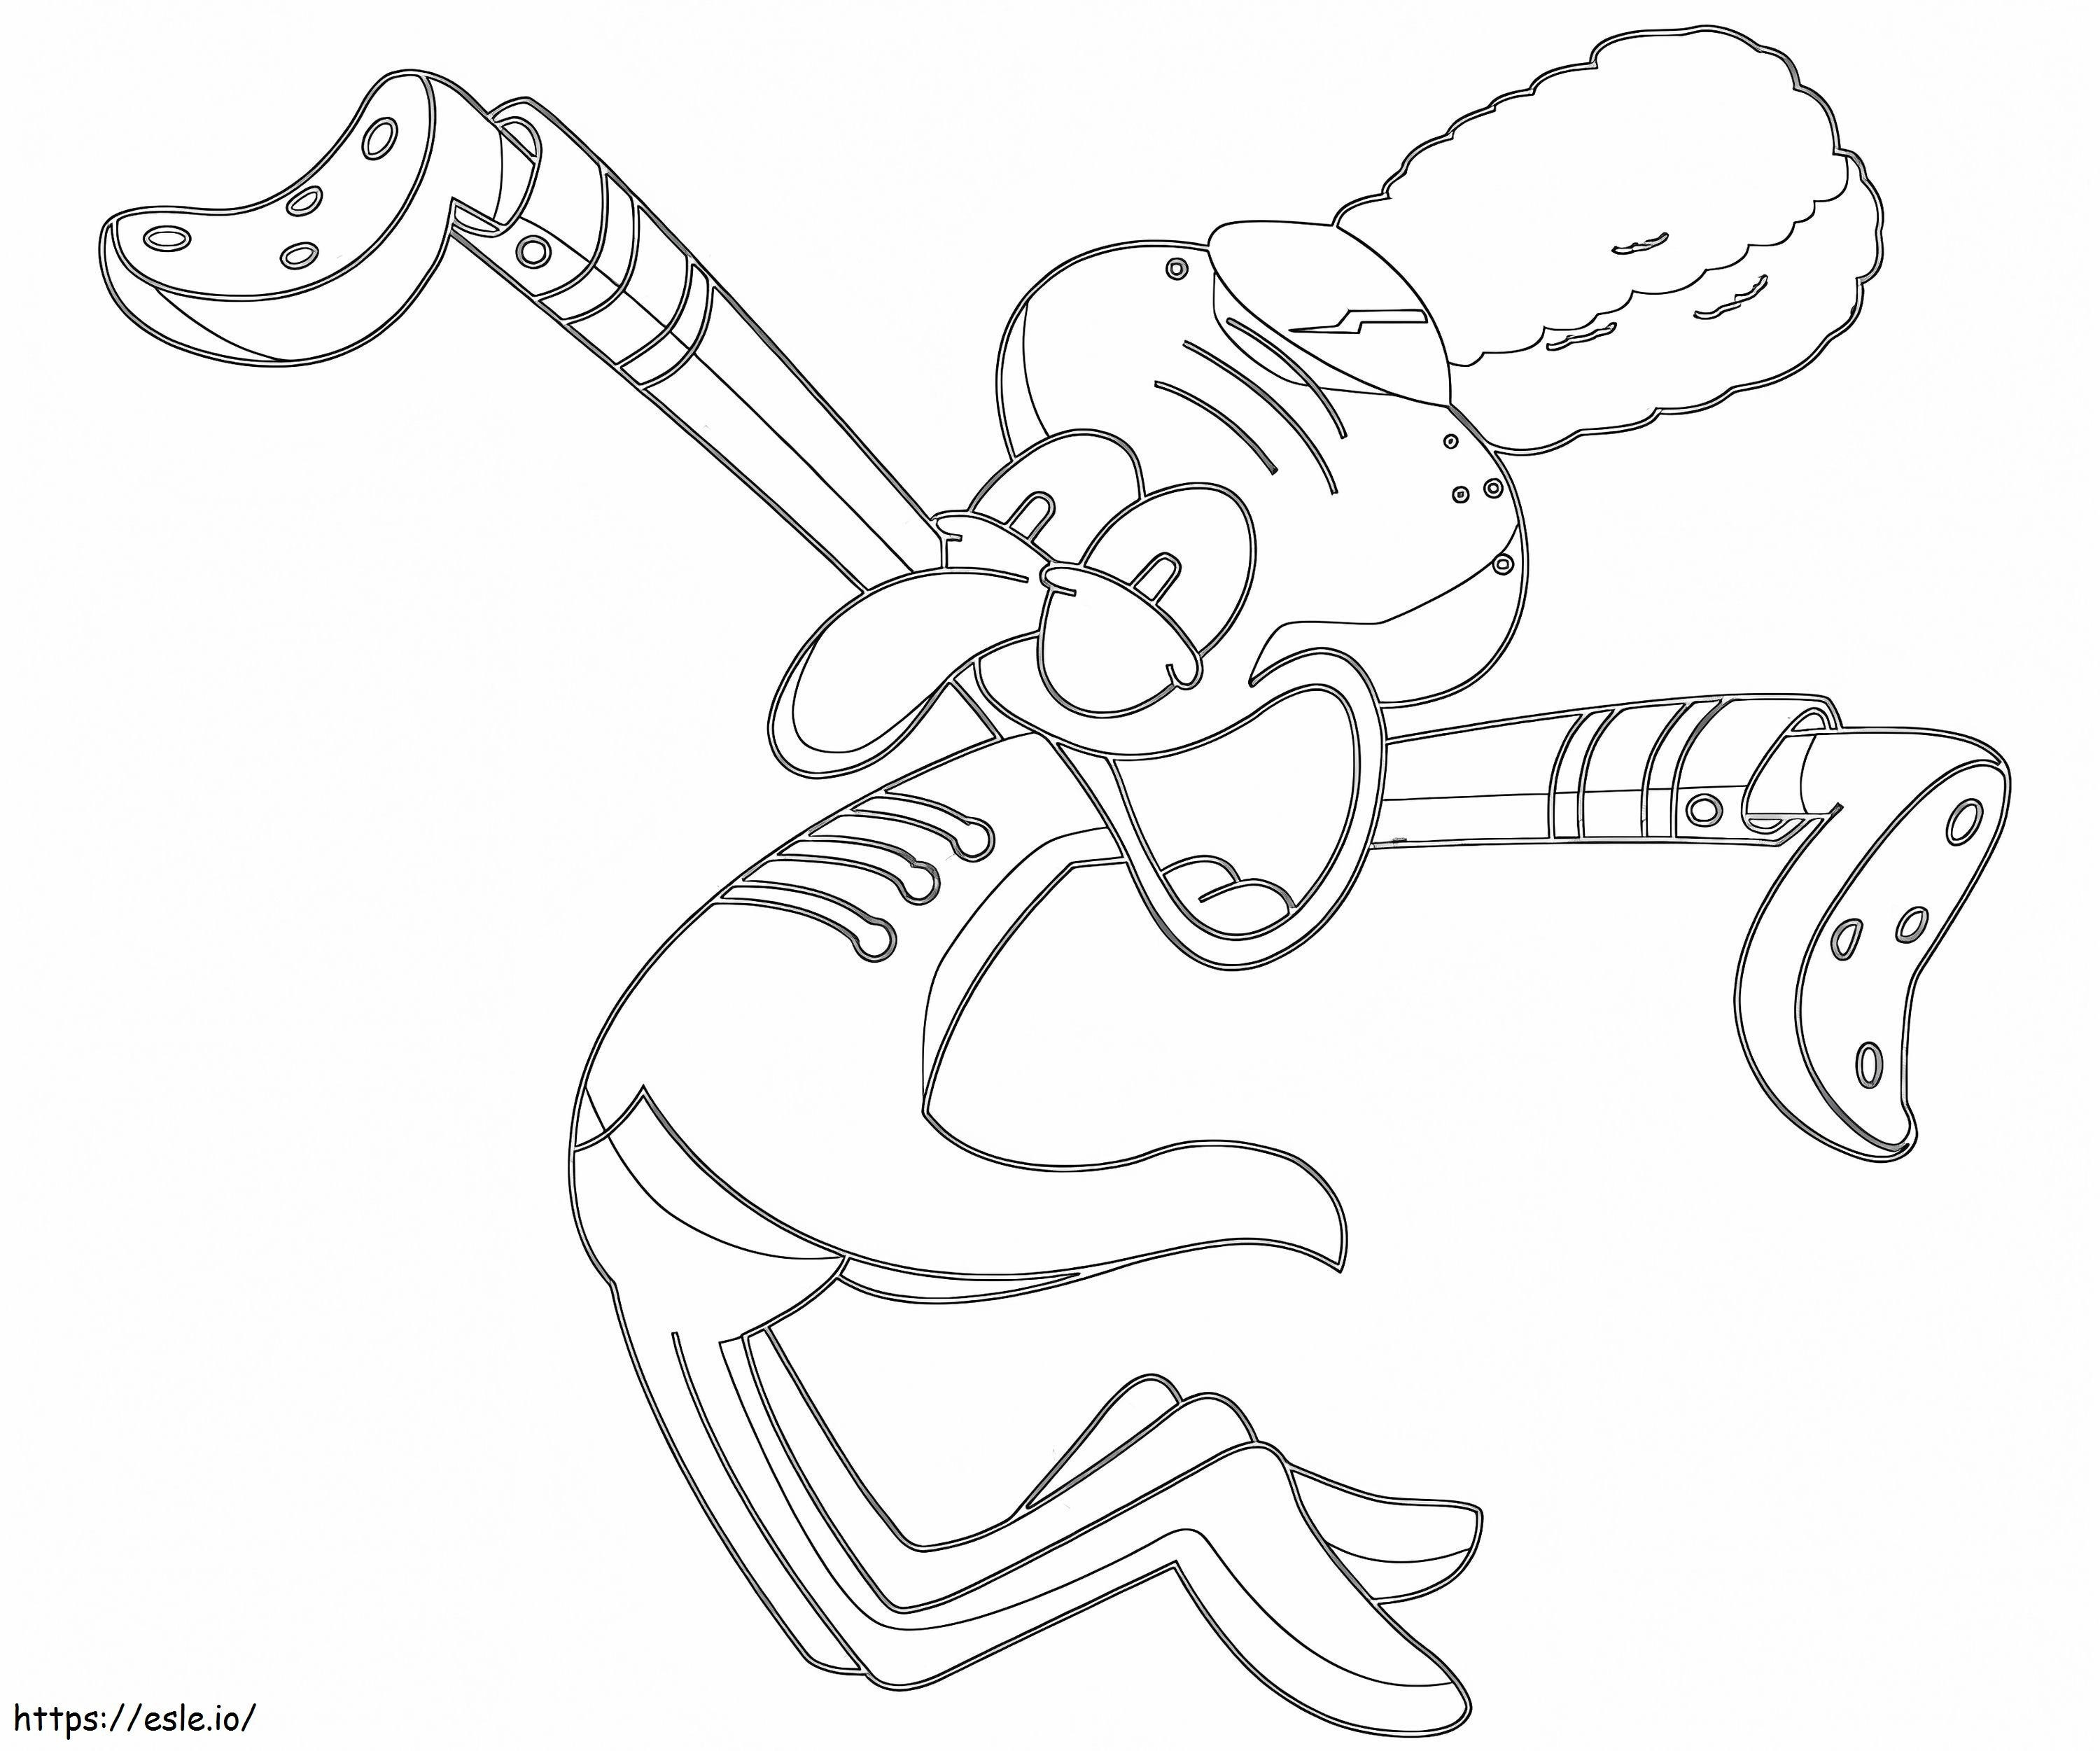 Happy Squidward coloring page